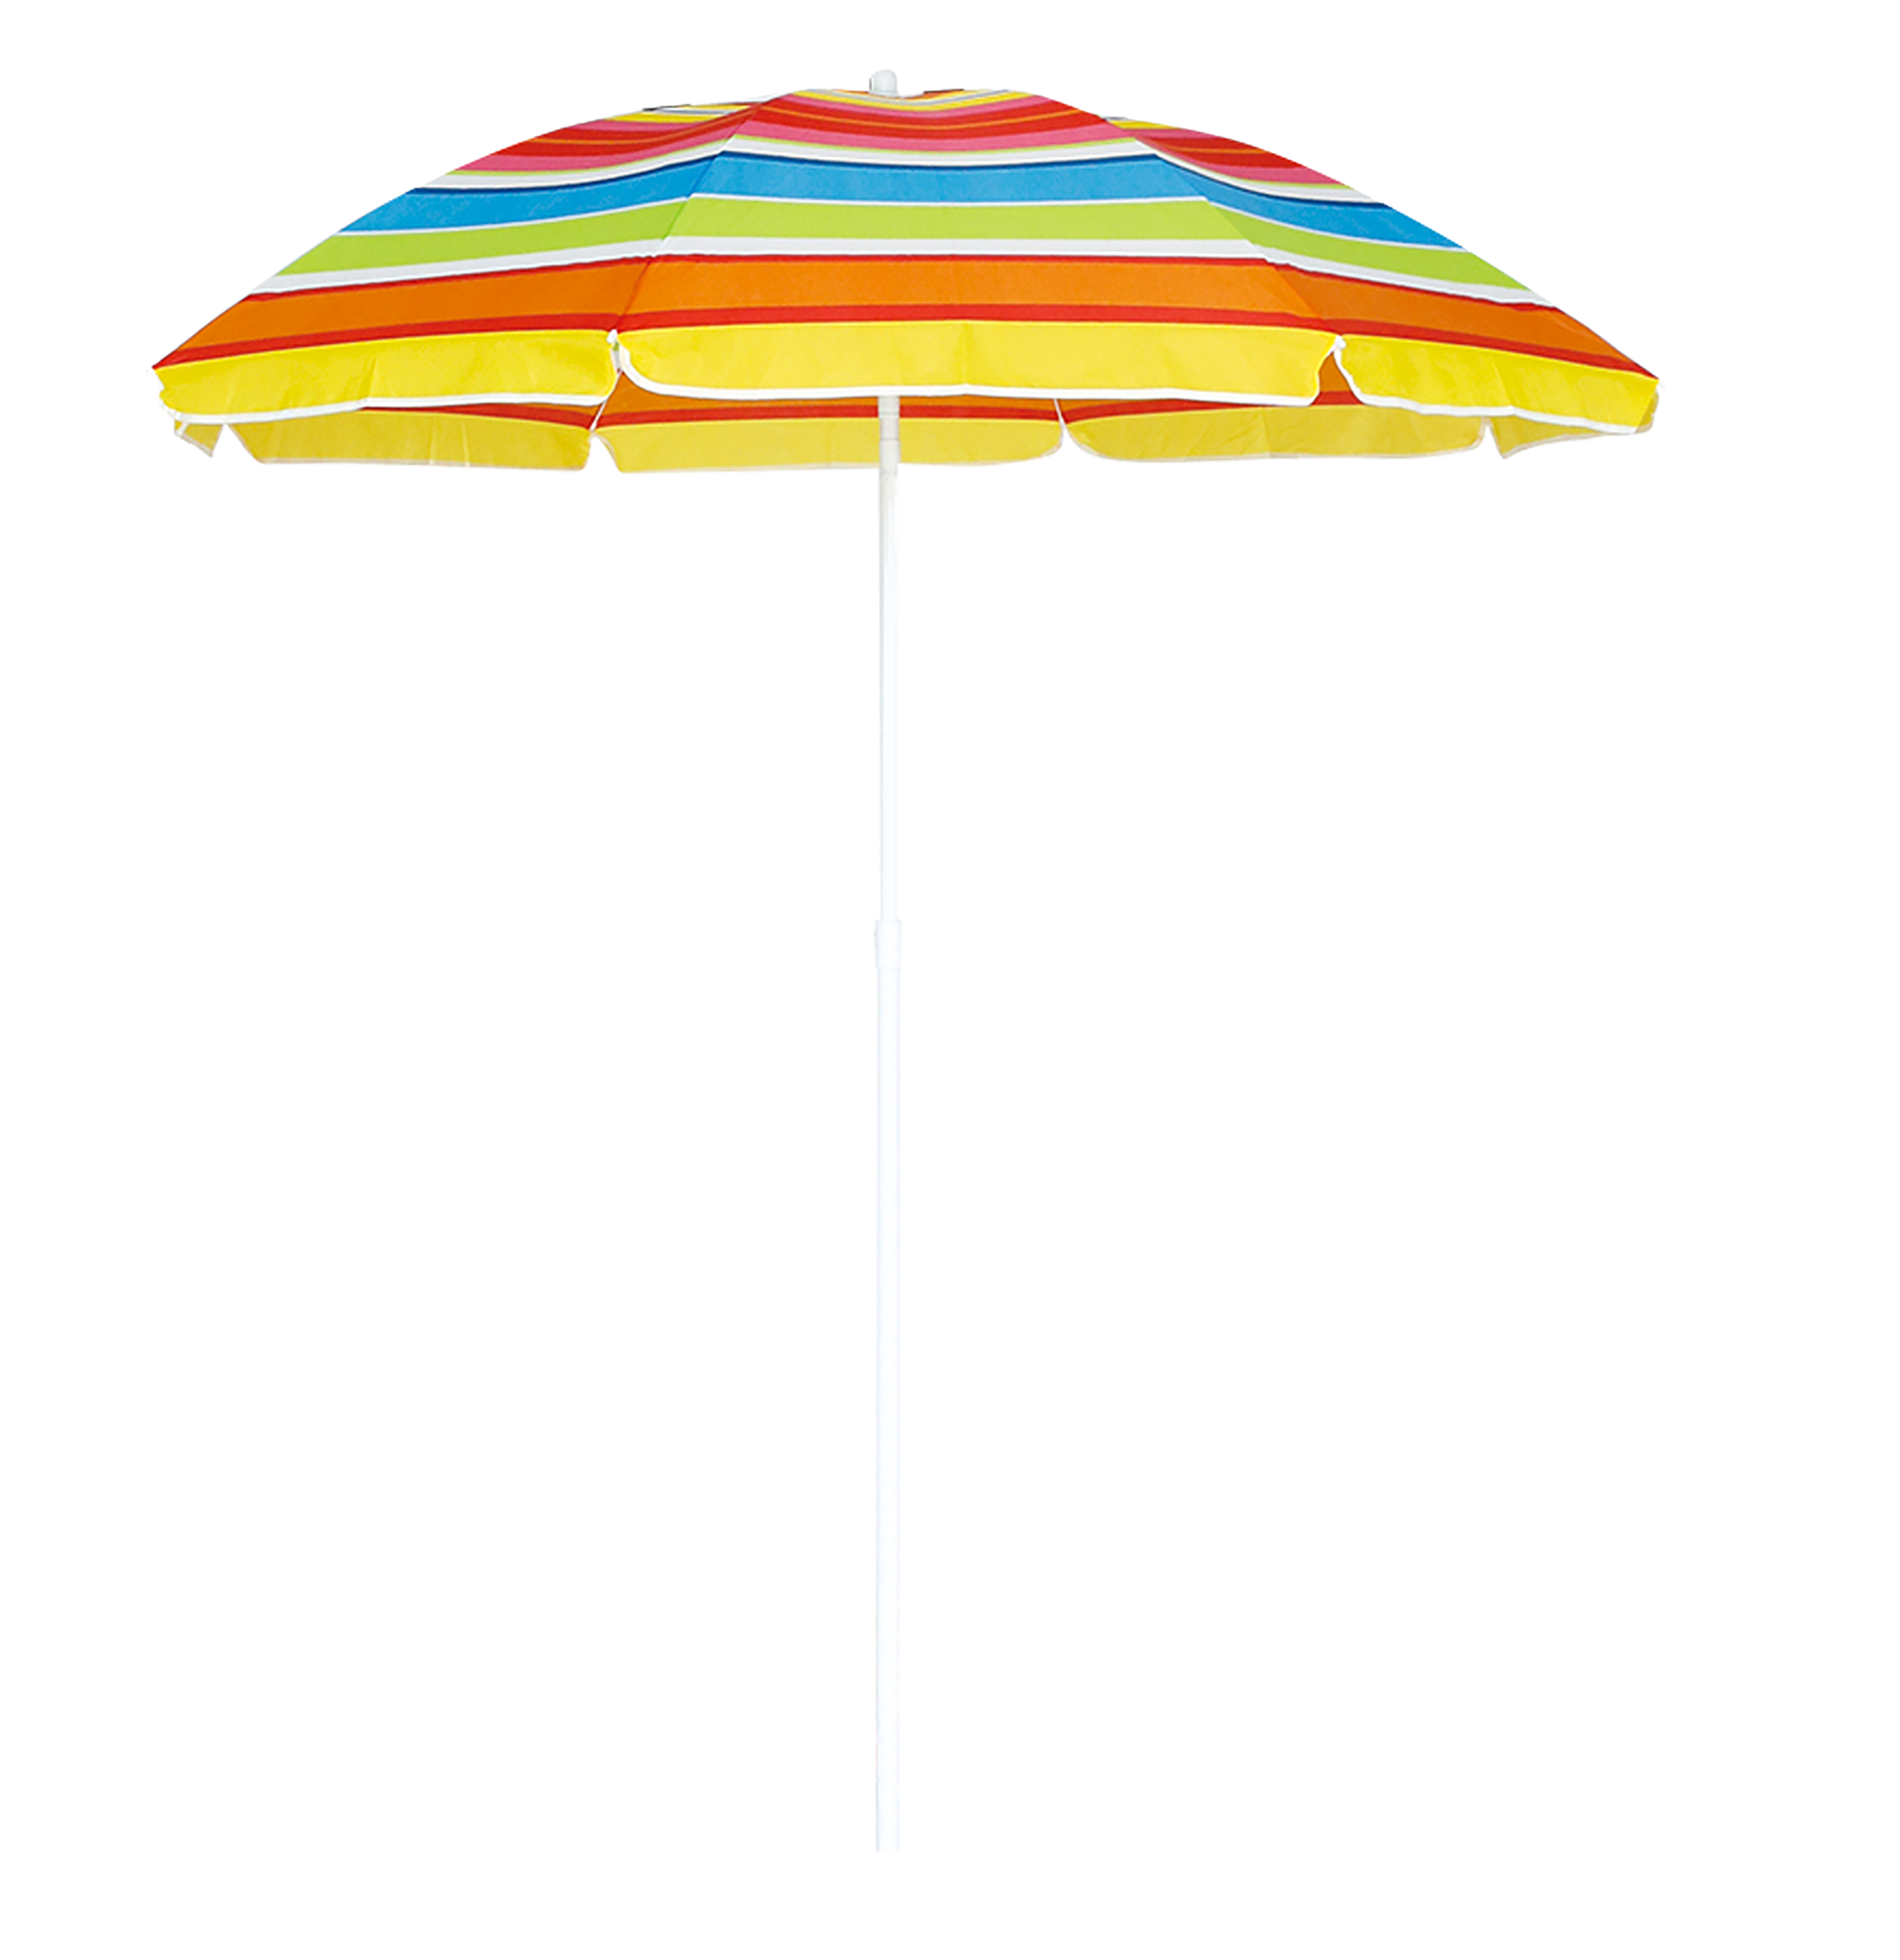 Зонт Actiwell пляжный регулируемый 180 см